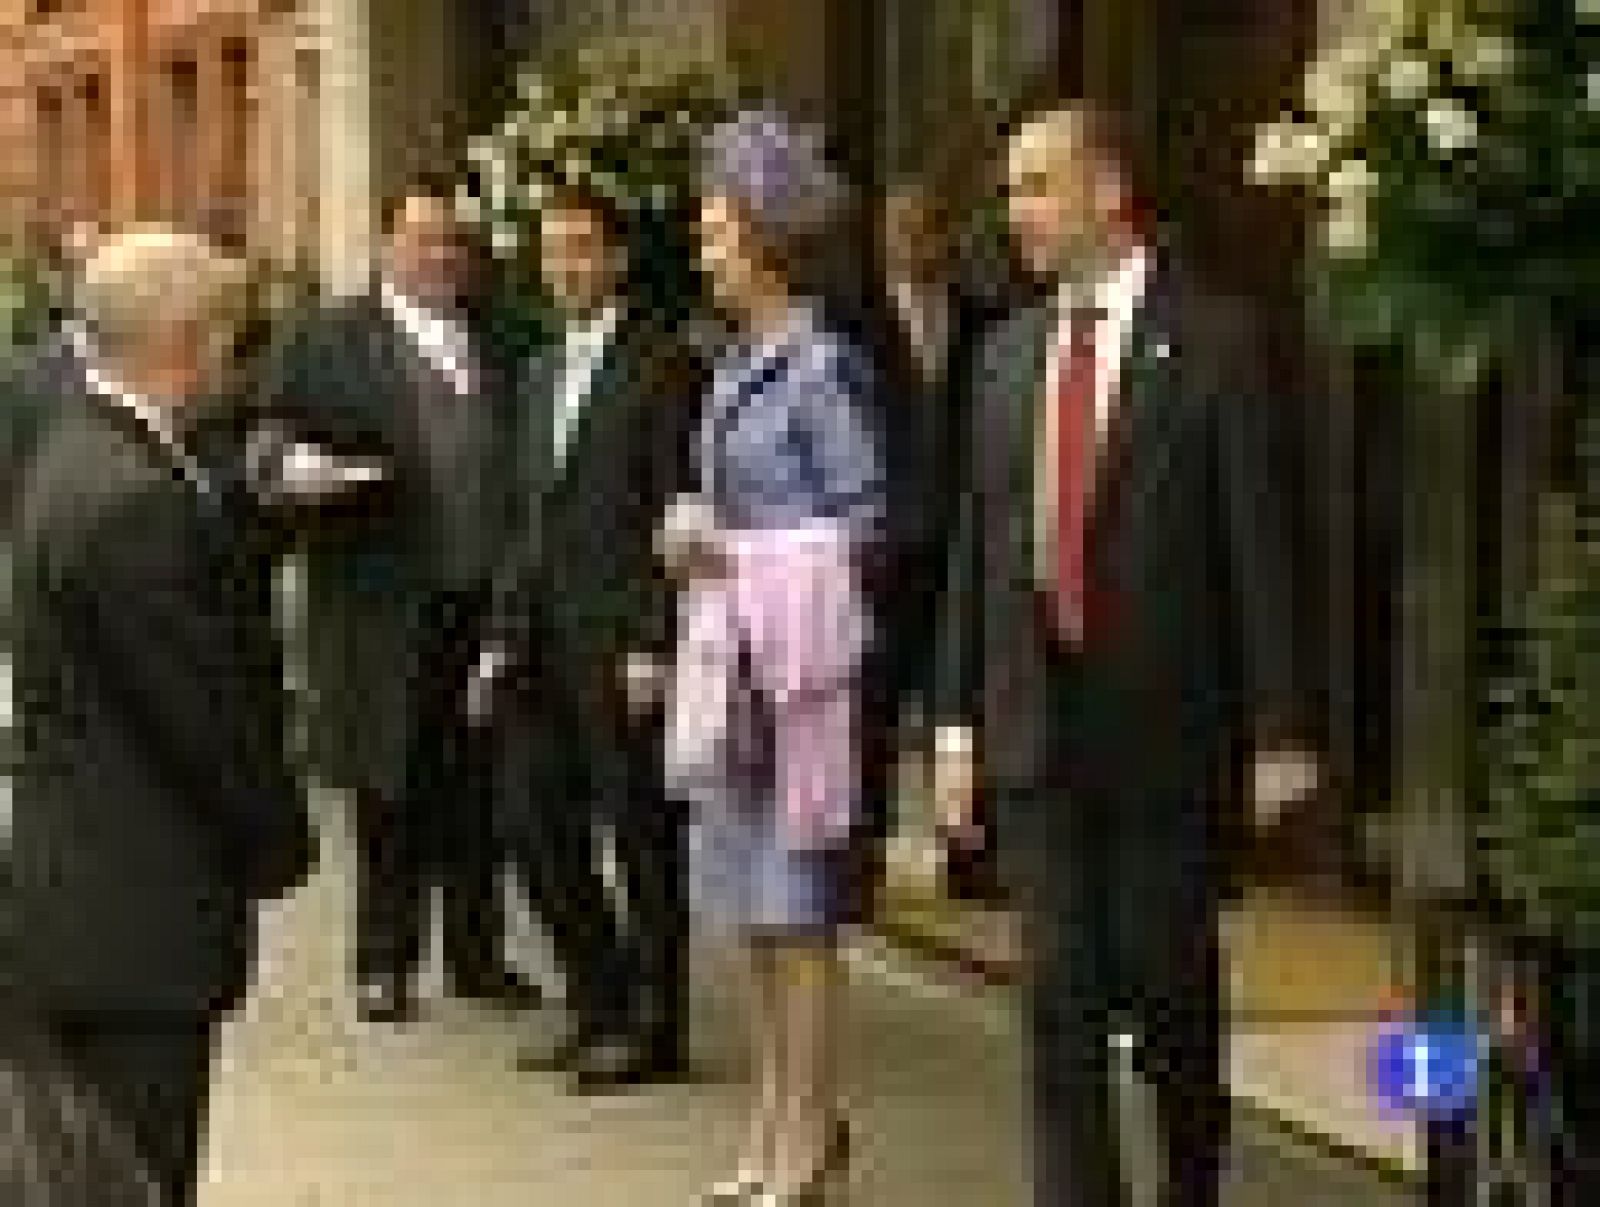  Más de 1.900 invitados a la boda real inglesa